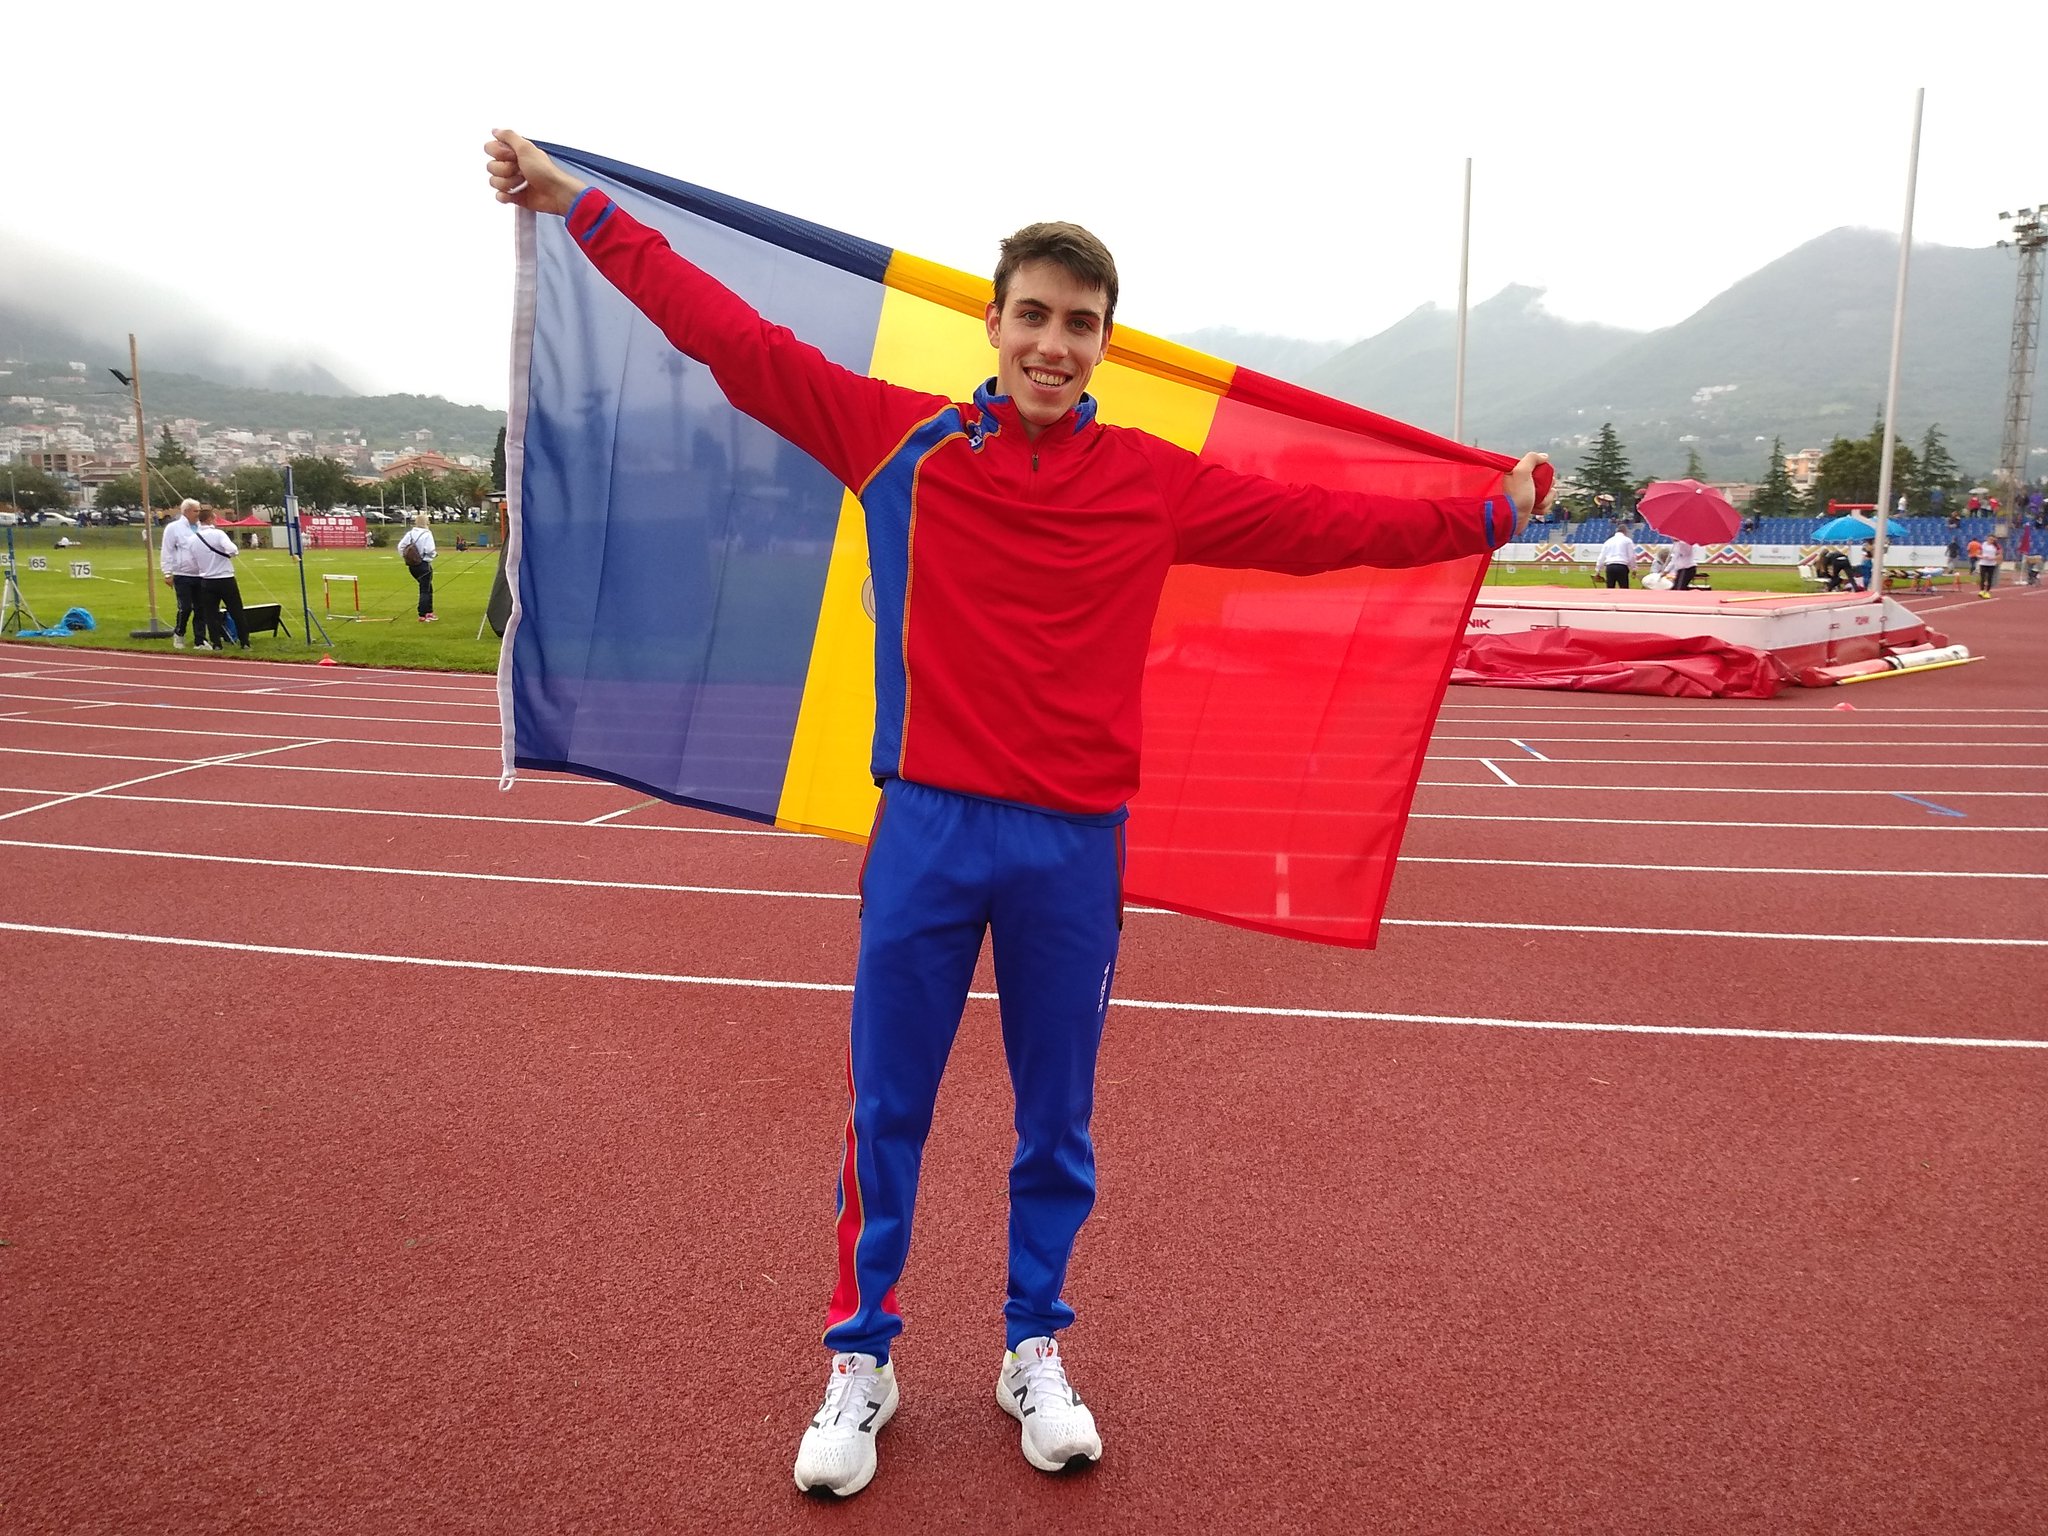 Dia 4 -Informatiu migdia- Pol Moya fa el primer or d'Andorra, Sanza és bronze i Rodeiro perd